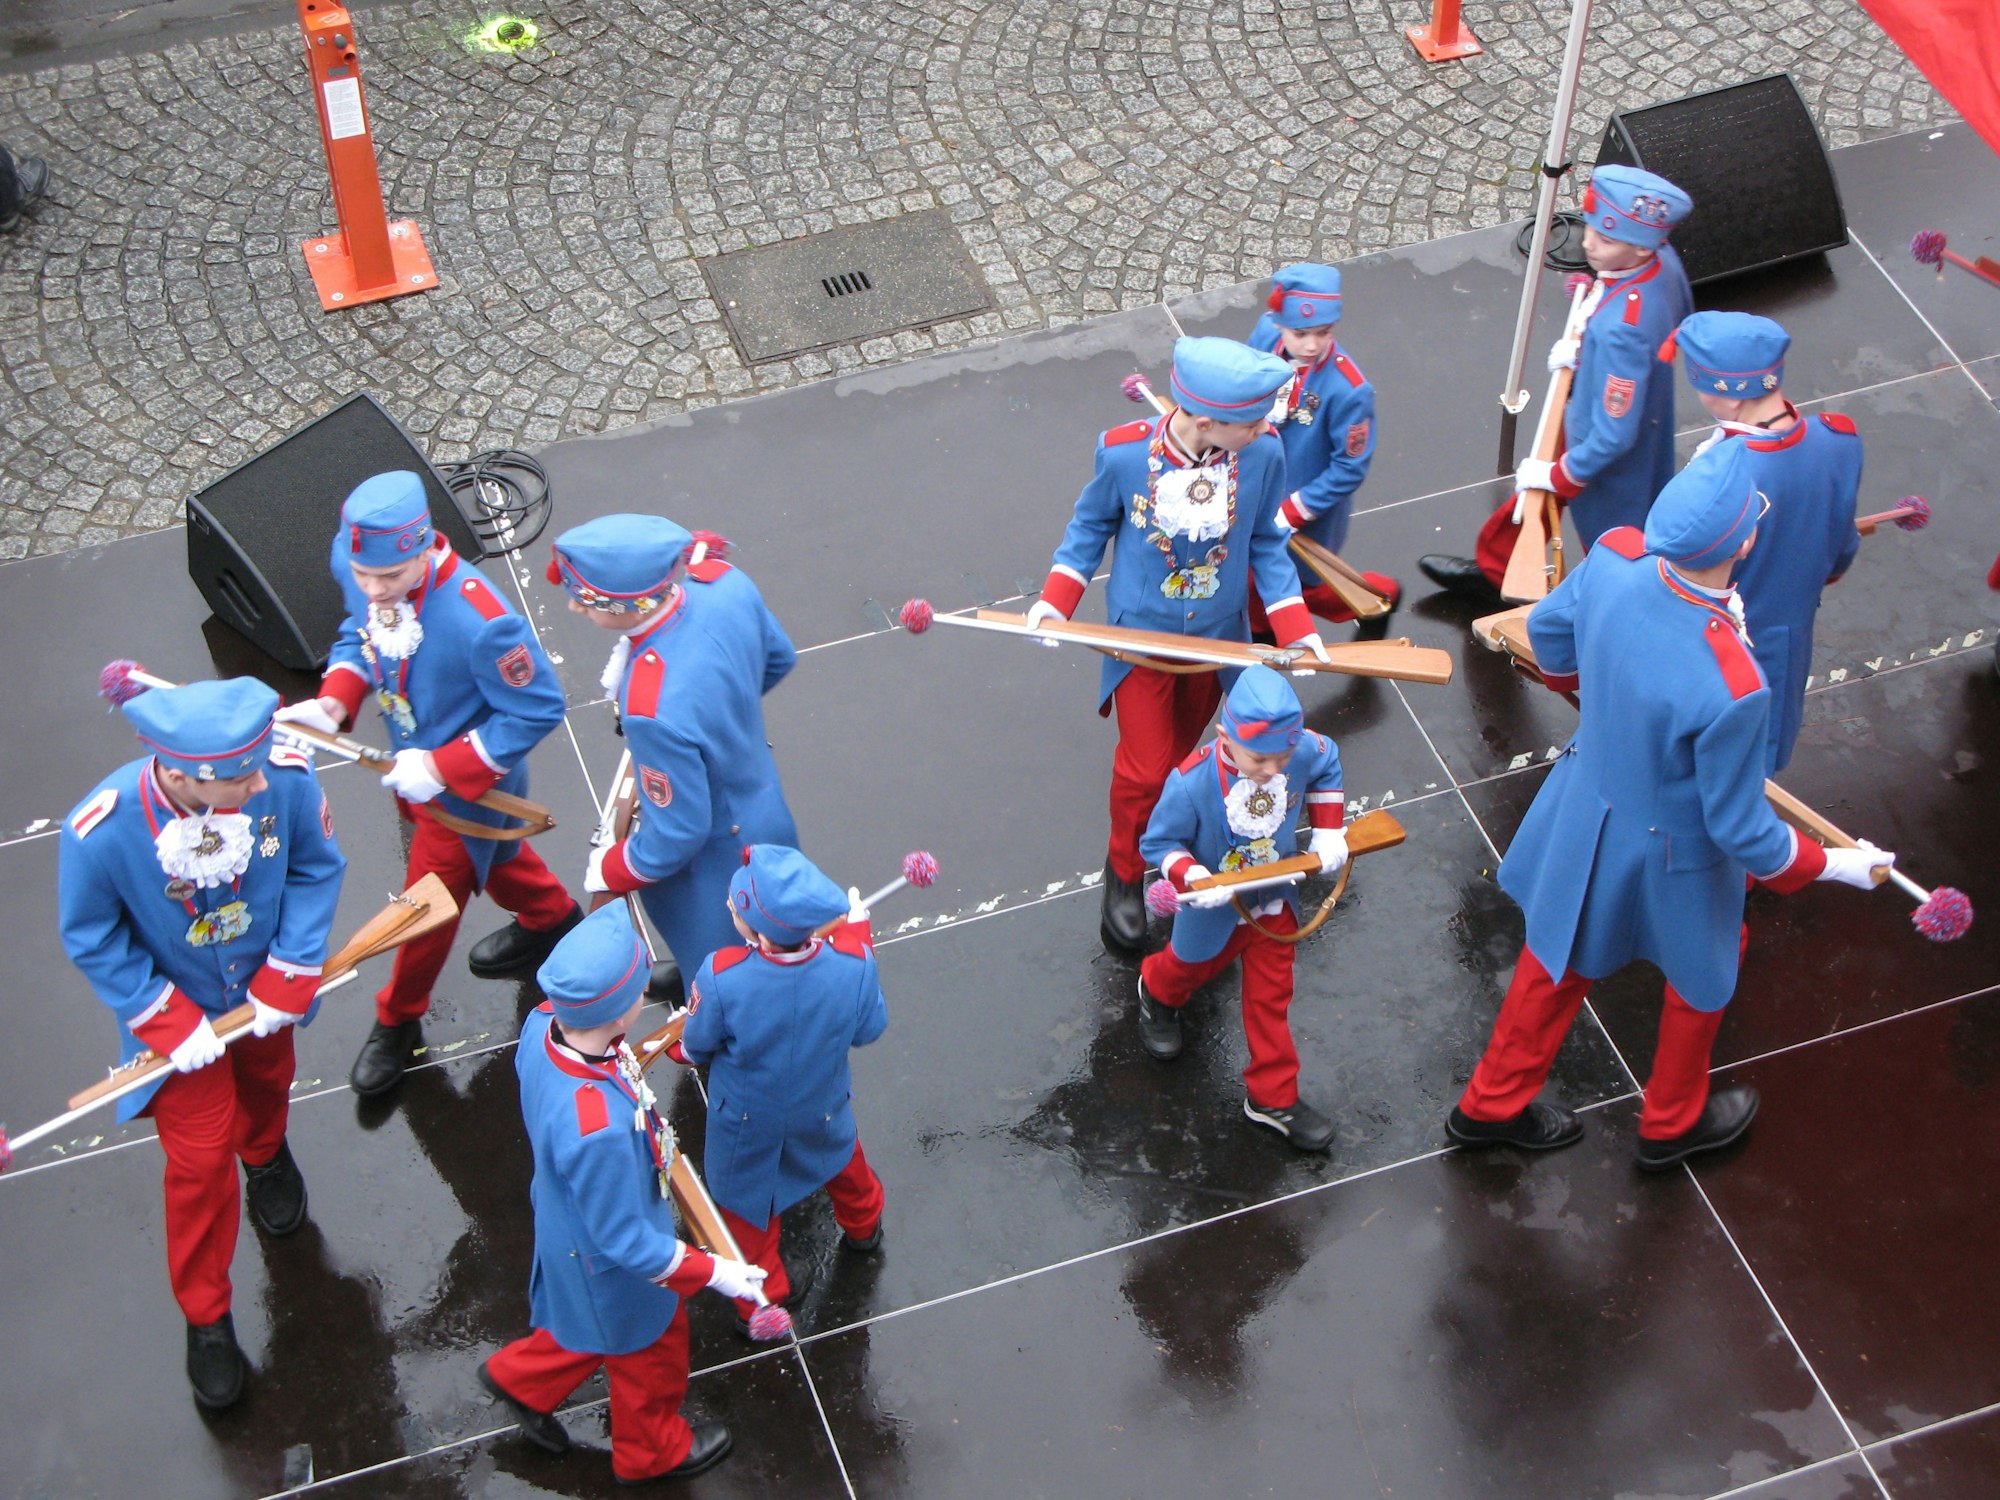 Kinder in blau-roten Stadtsoldaten-Uniformen in Tanzformation auf einer Bühne, von oben fotografiert.